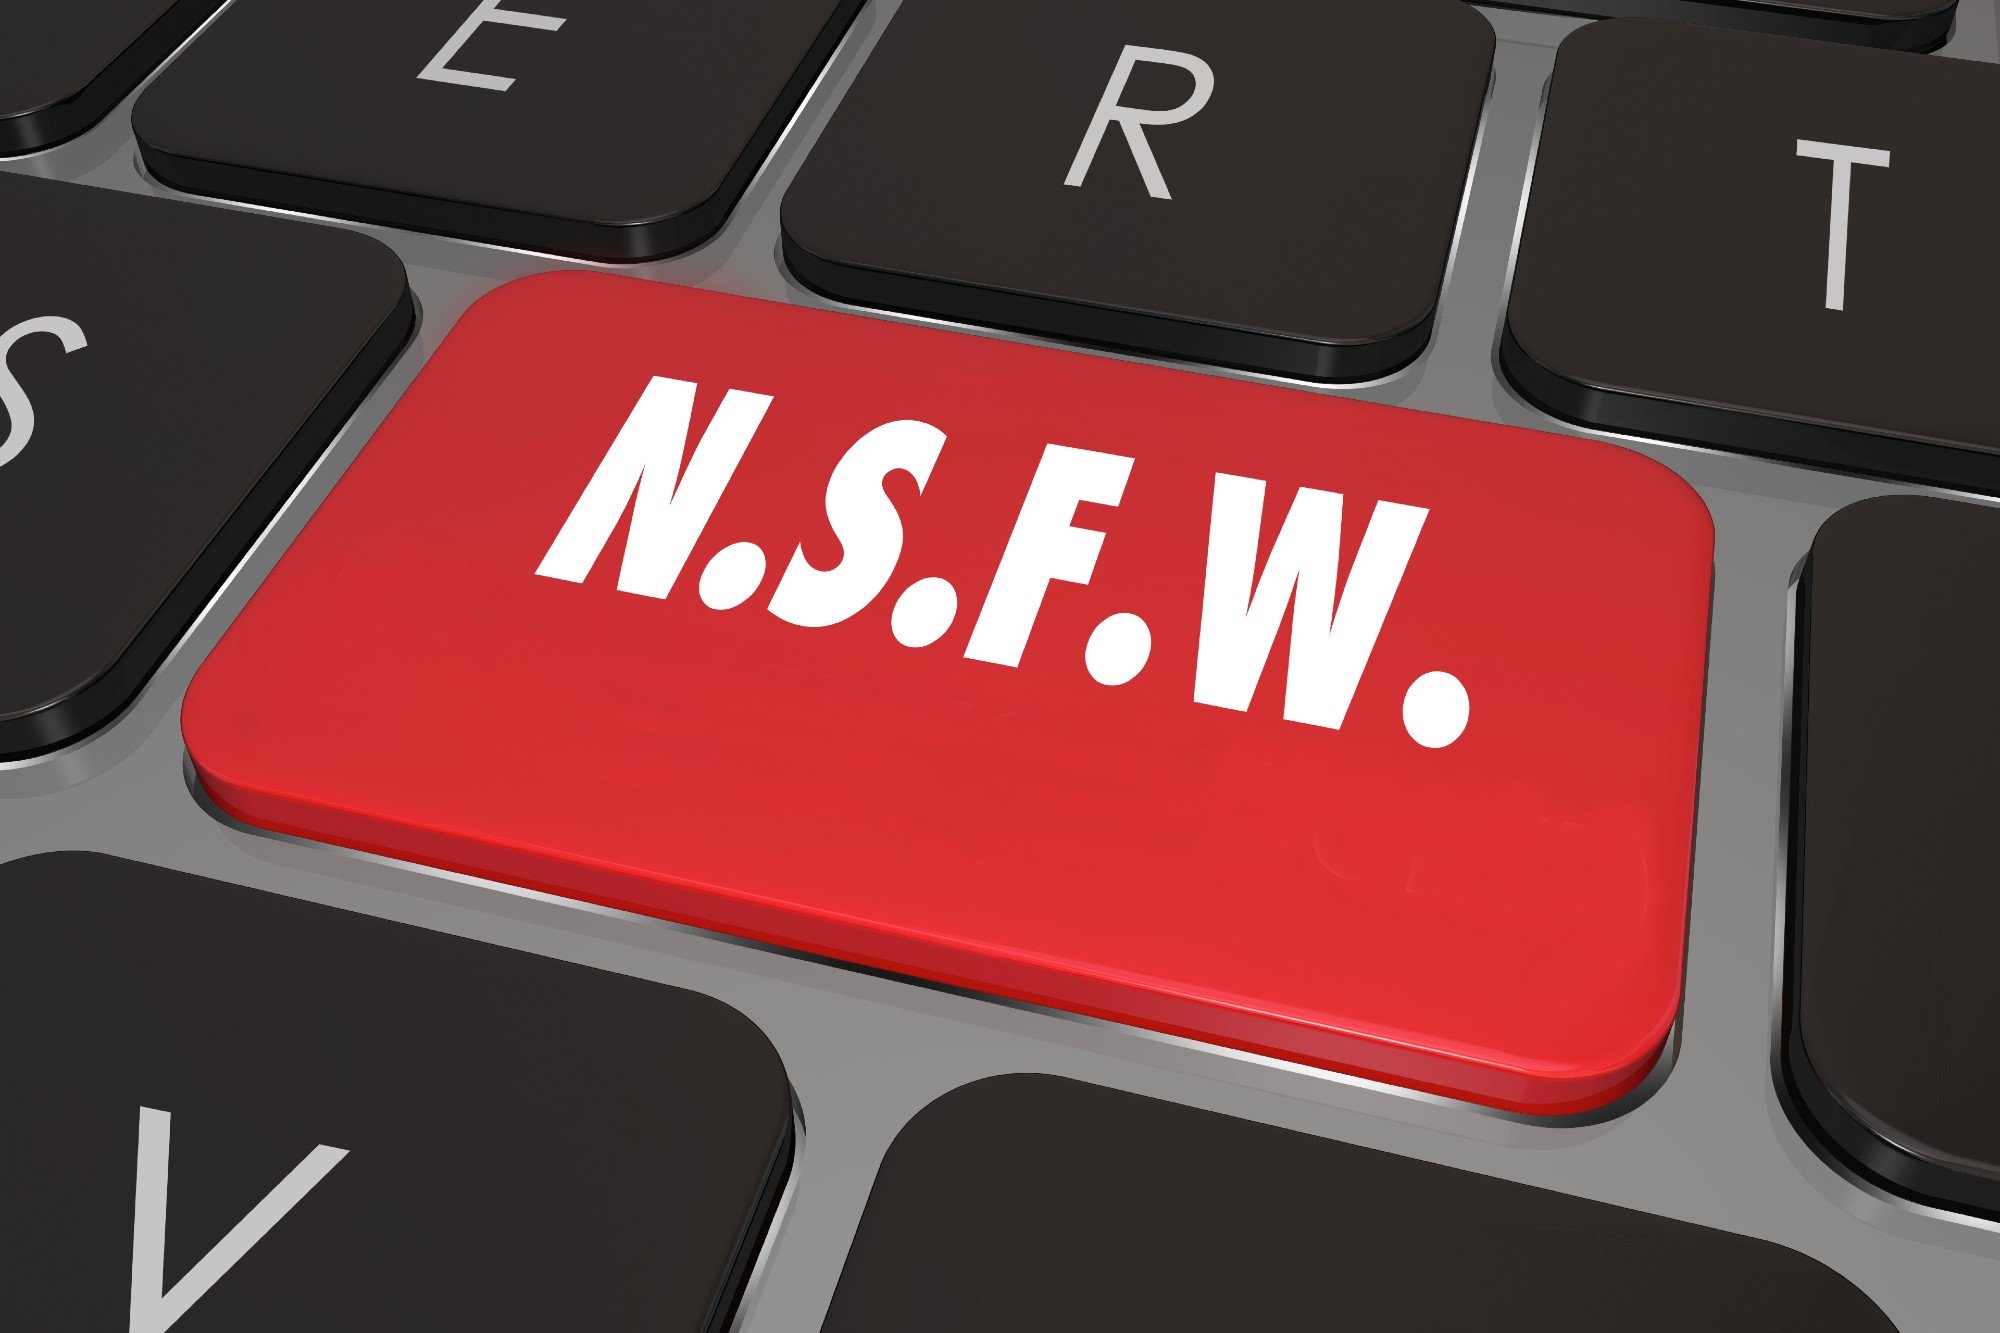 Qué significan las siglas NSFW y por qué te conviene saberlo